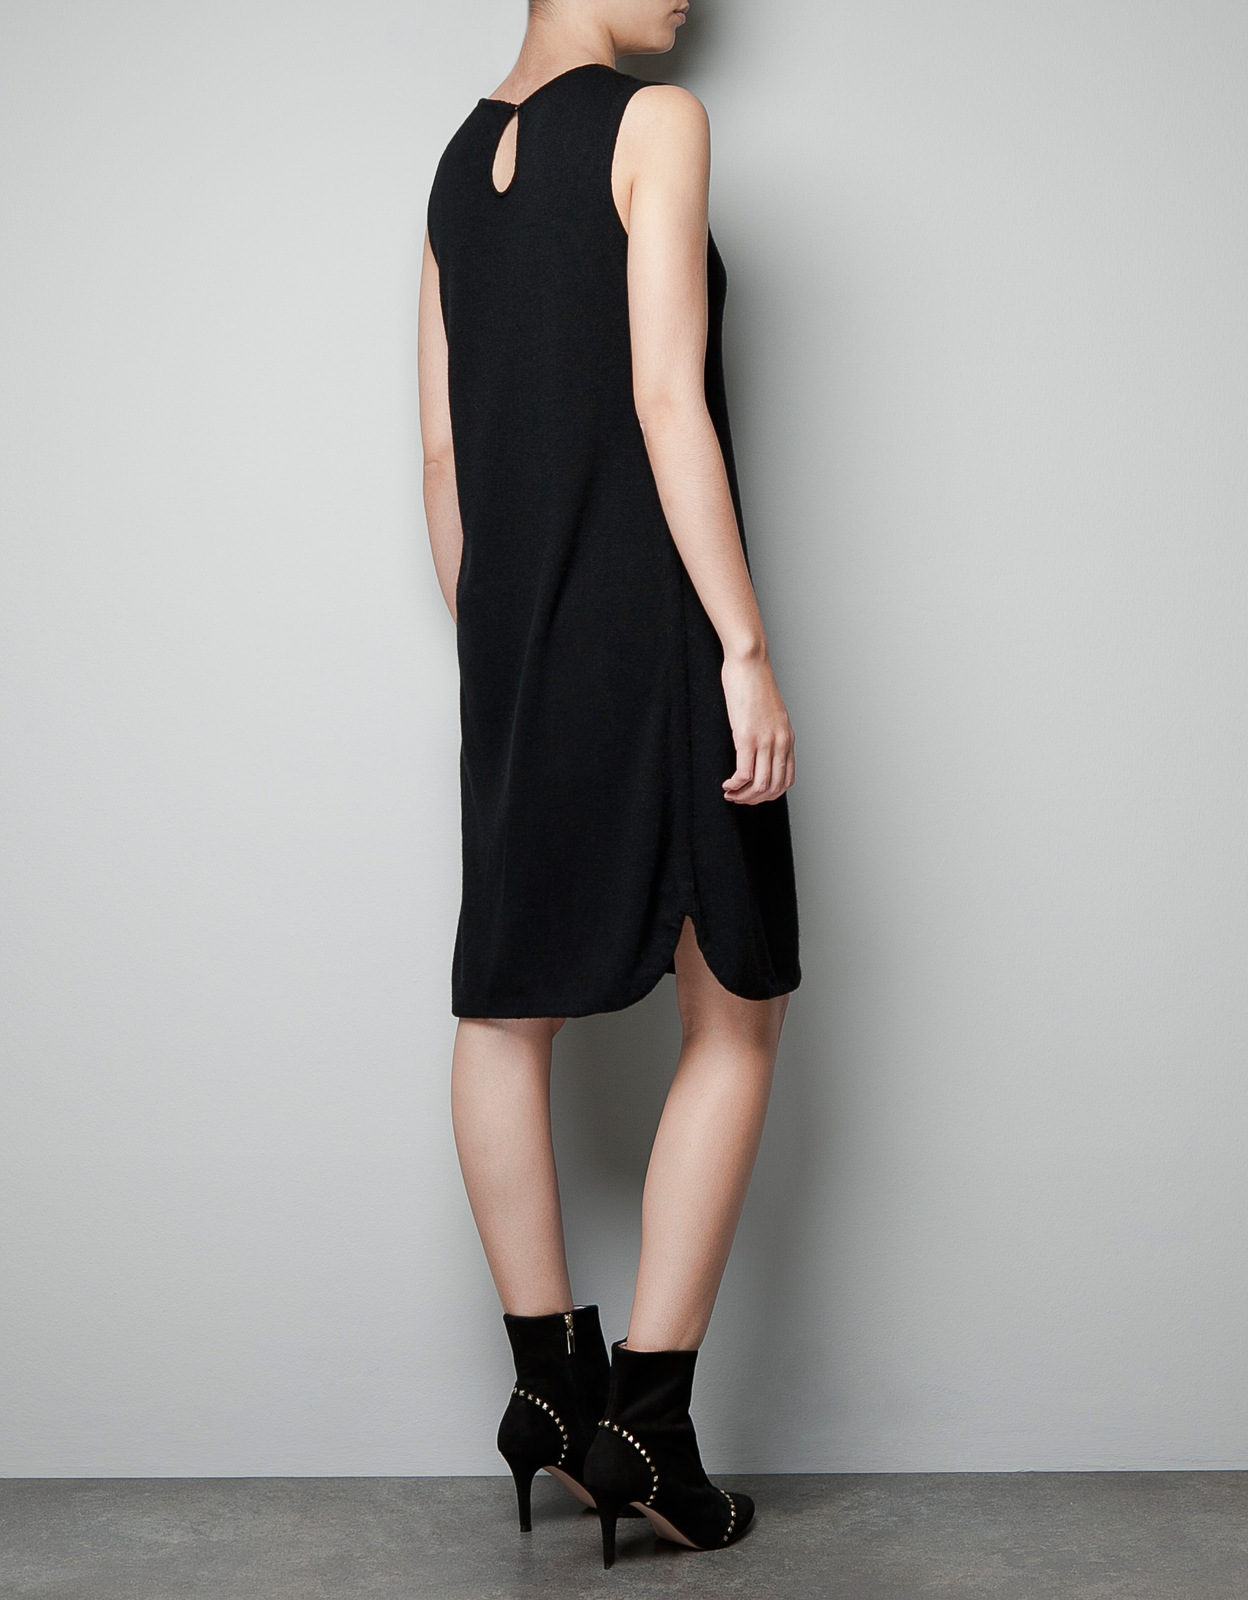 Zara fekete ujjatlan ruha 2012 fotója